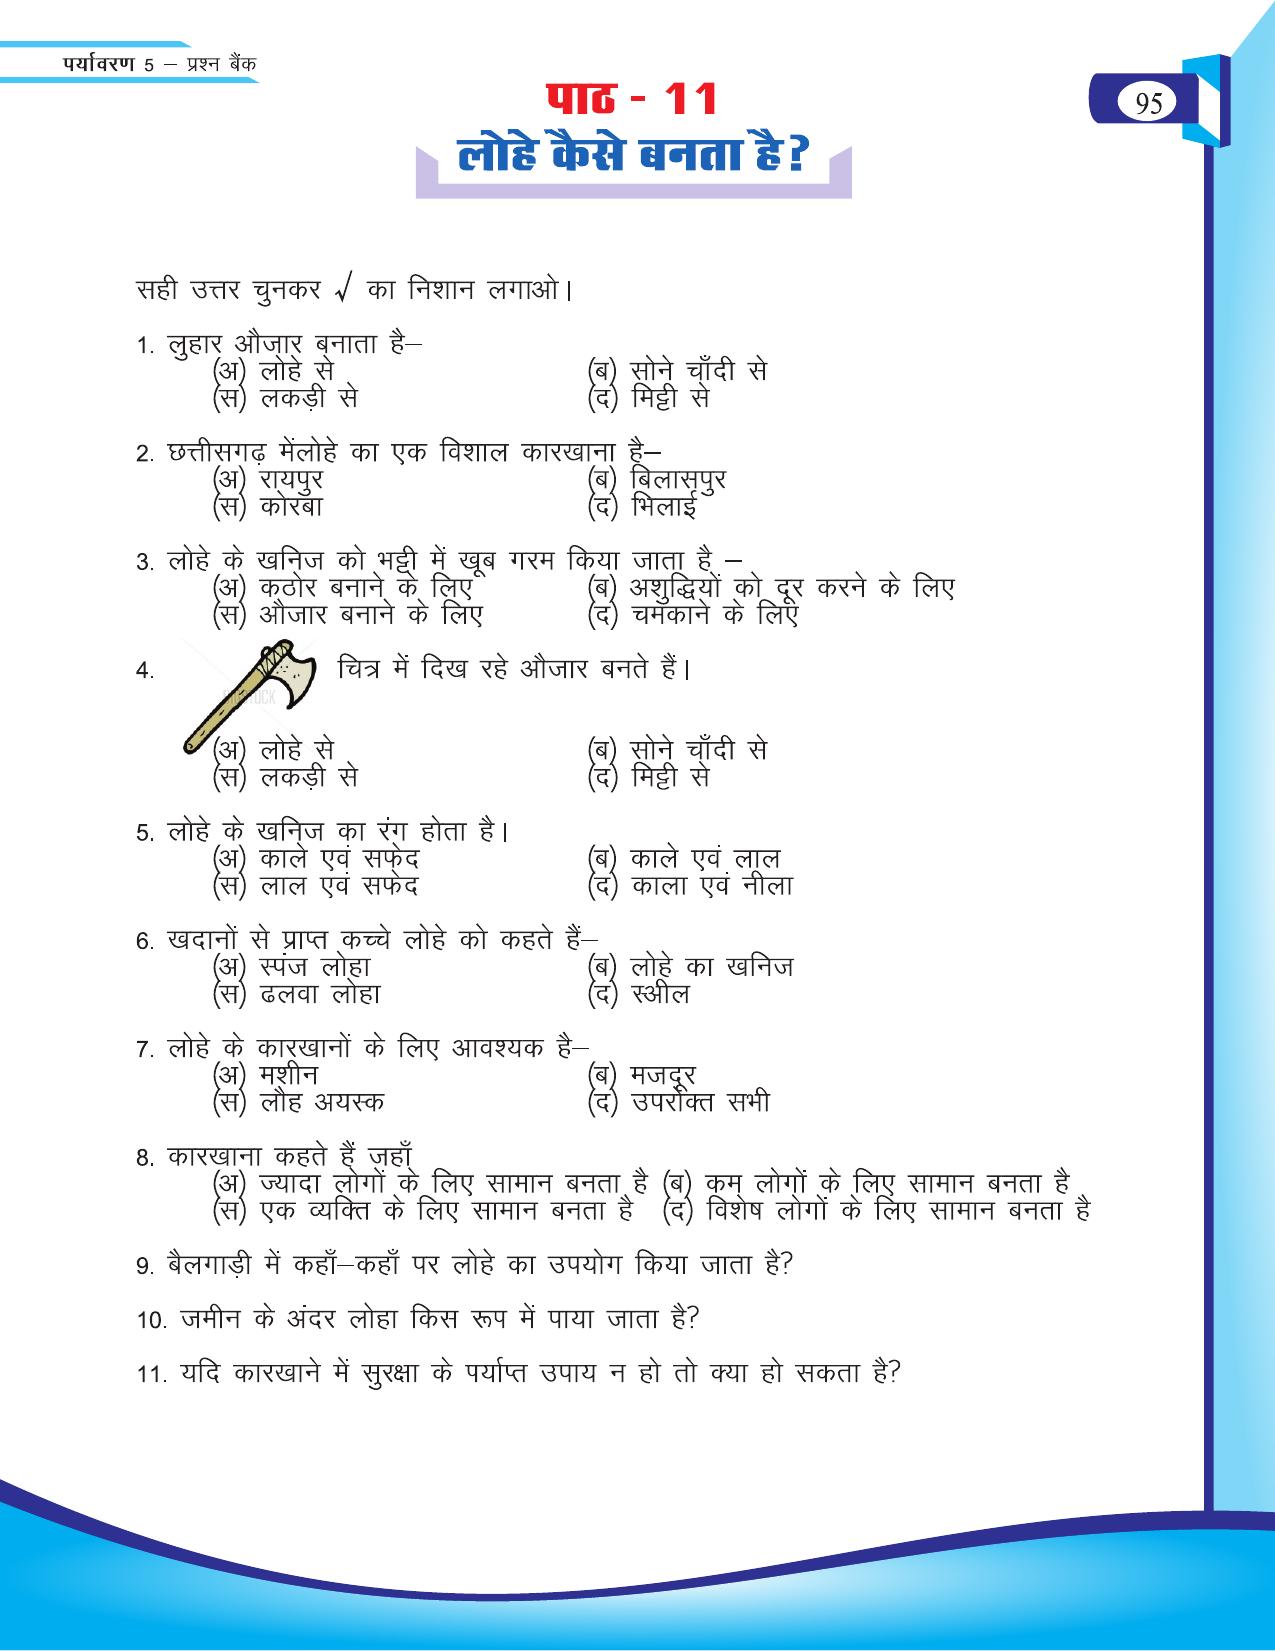 Chhattisgarh Board Class 5 EVS Question Bank 2015-16 - Page 21